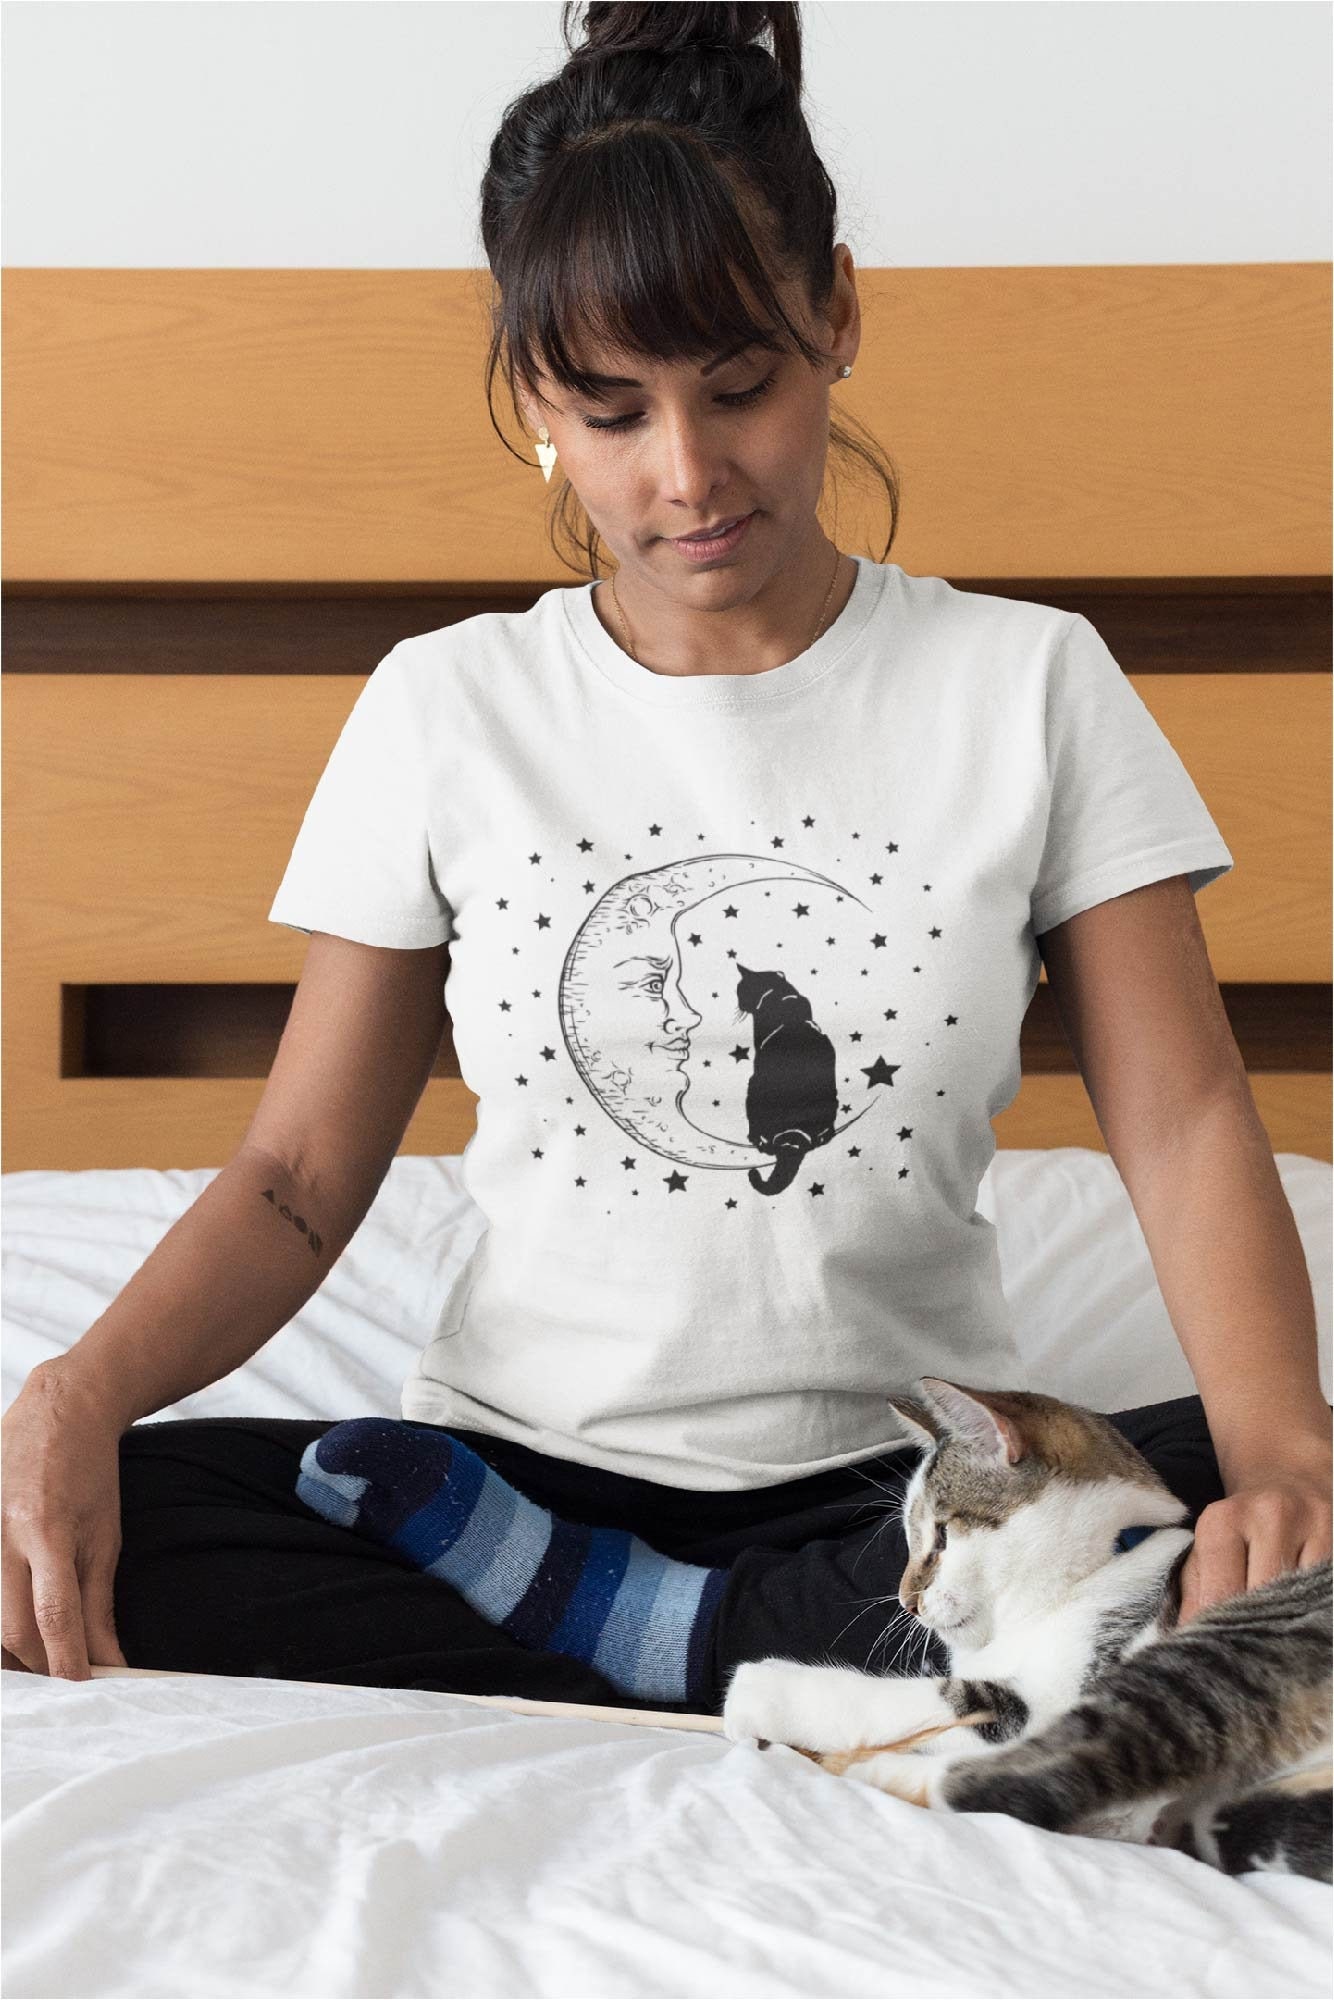 Cat and Moon TShirt, Halloween Shirt, Cat Witch Shirt, Black Cat Shirt, Celestial Shirt